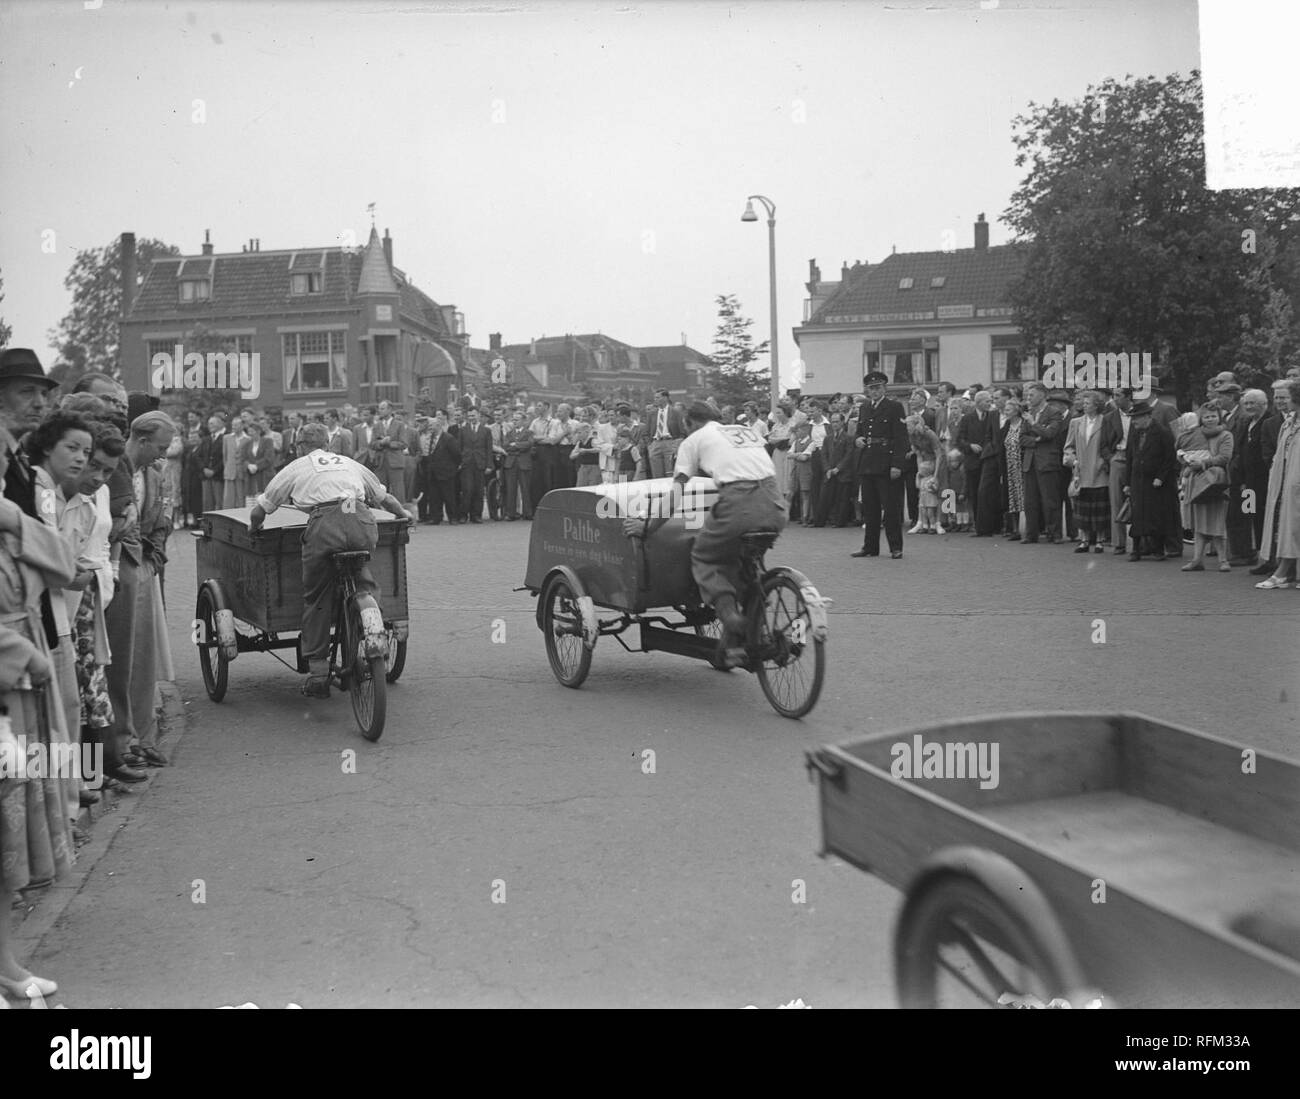 Bakfietsen wedstrijden in Leiden t.g.v. 375 jaar universiteit, Bestanddeelnr 904-0060. Stock Photo